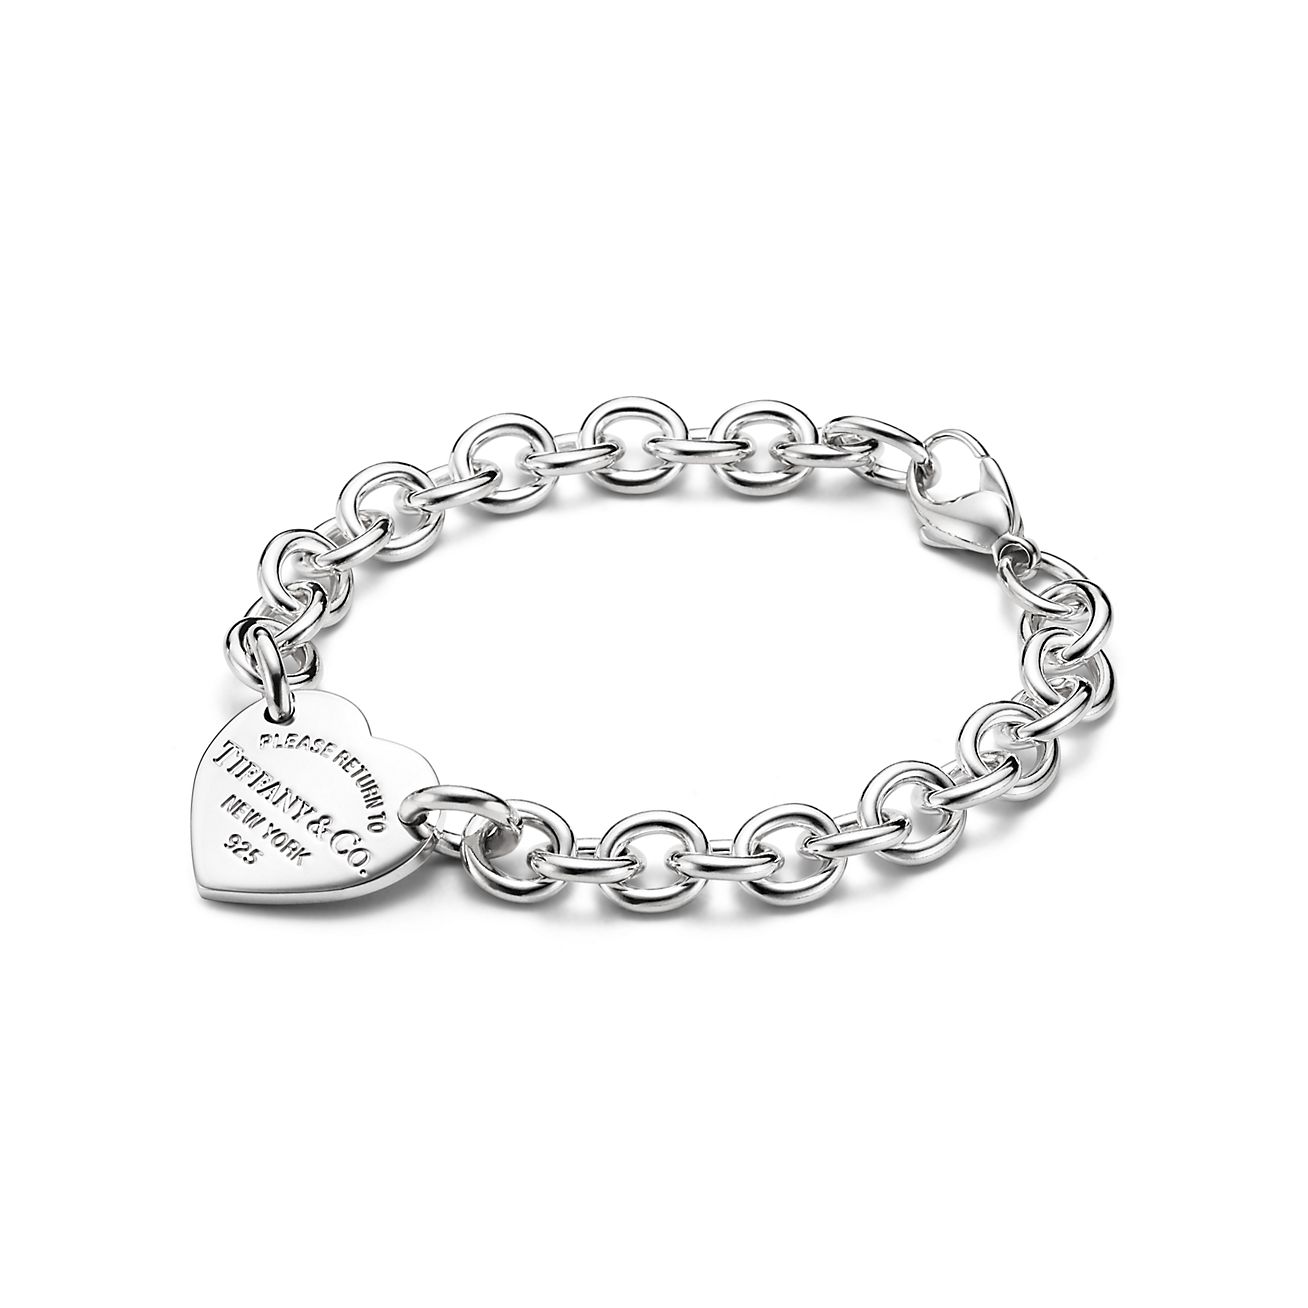 Tiffanys bracelet  Tiffany and co jewelry, Tiffany jewelry, Luxury jewelry